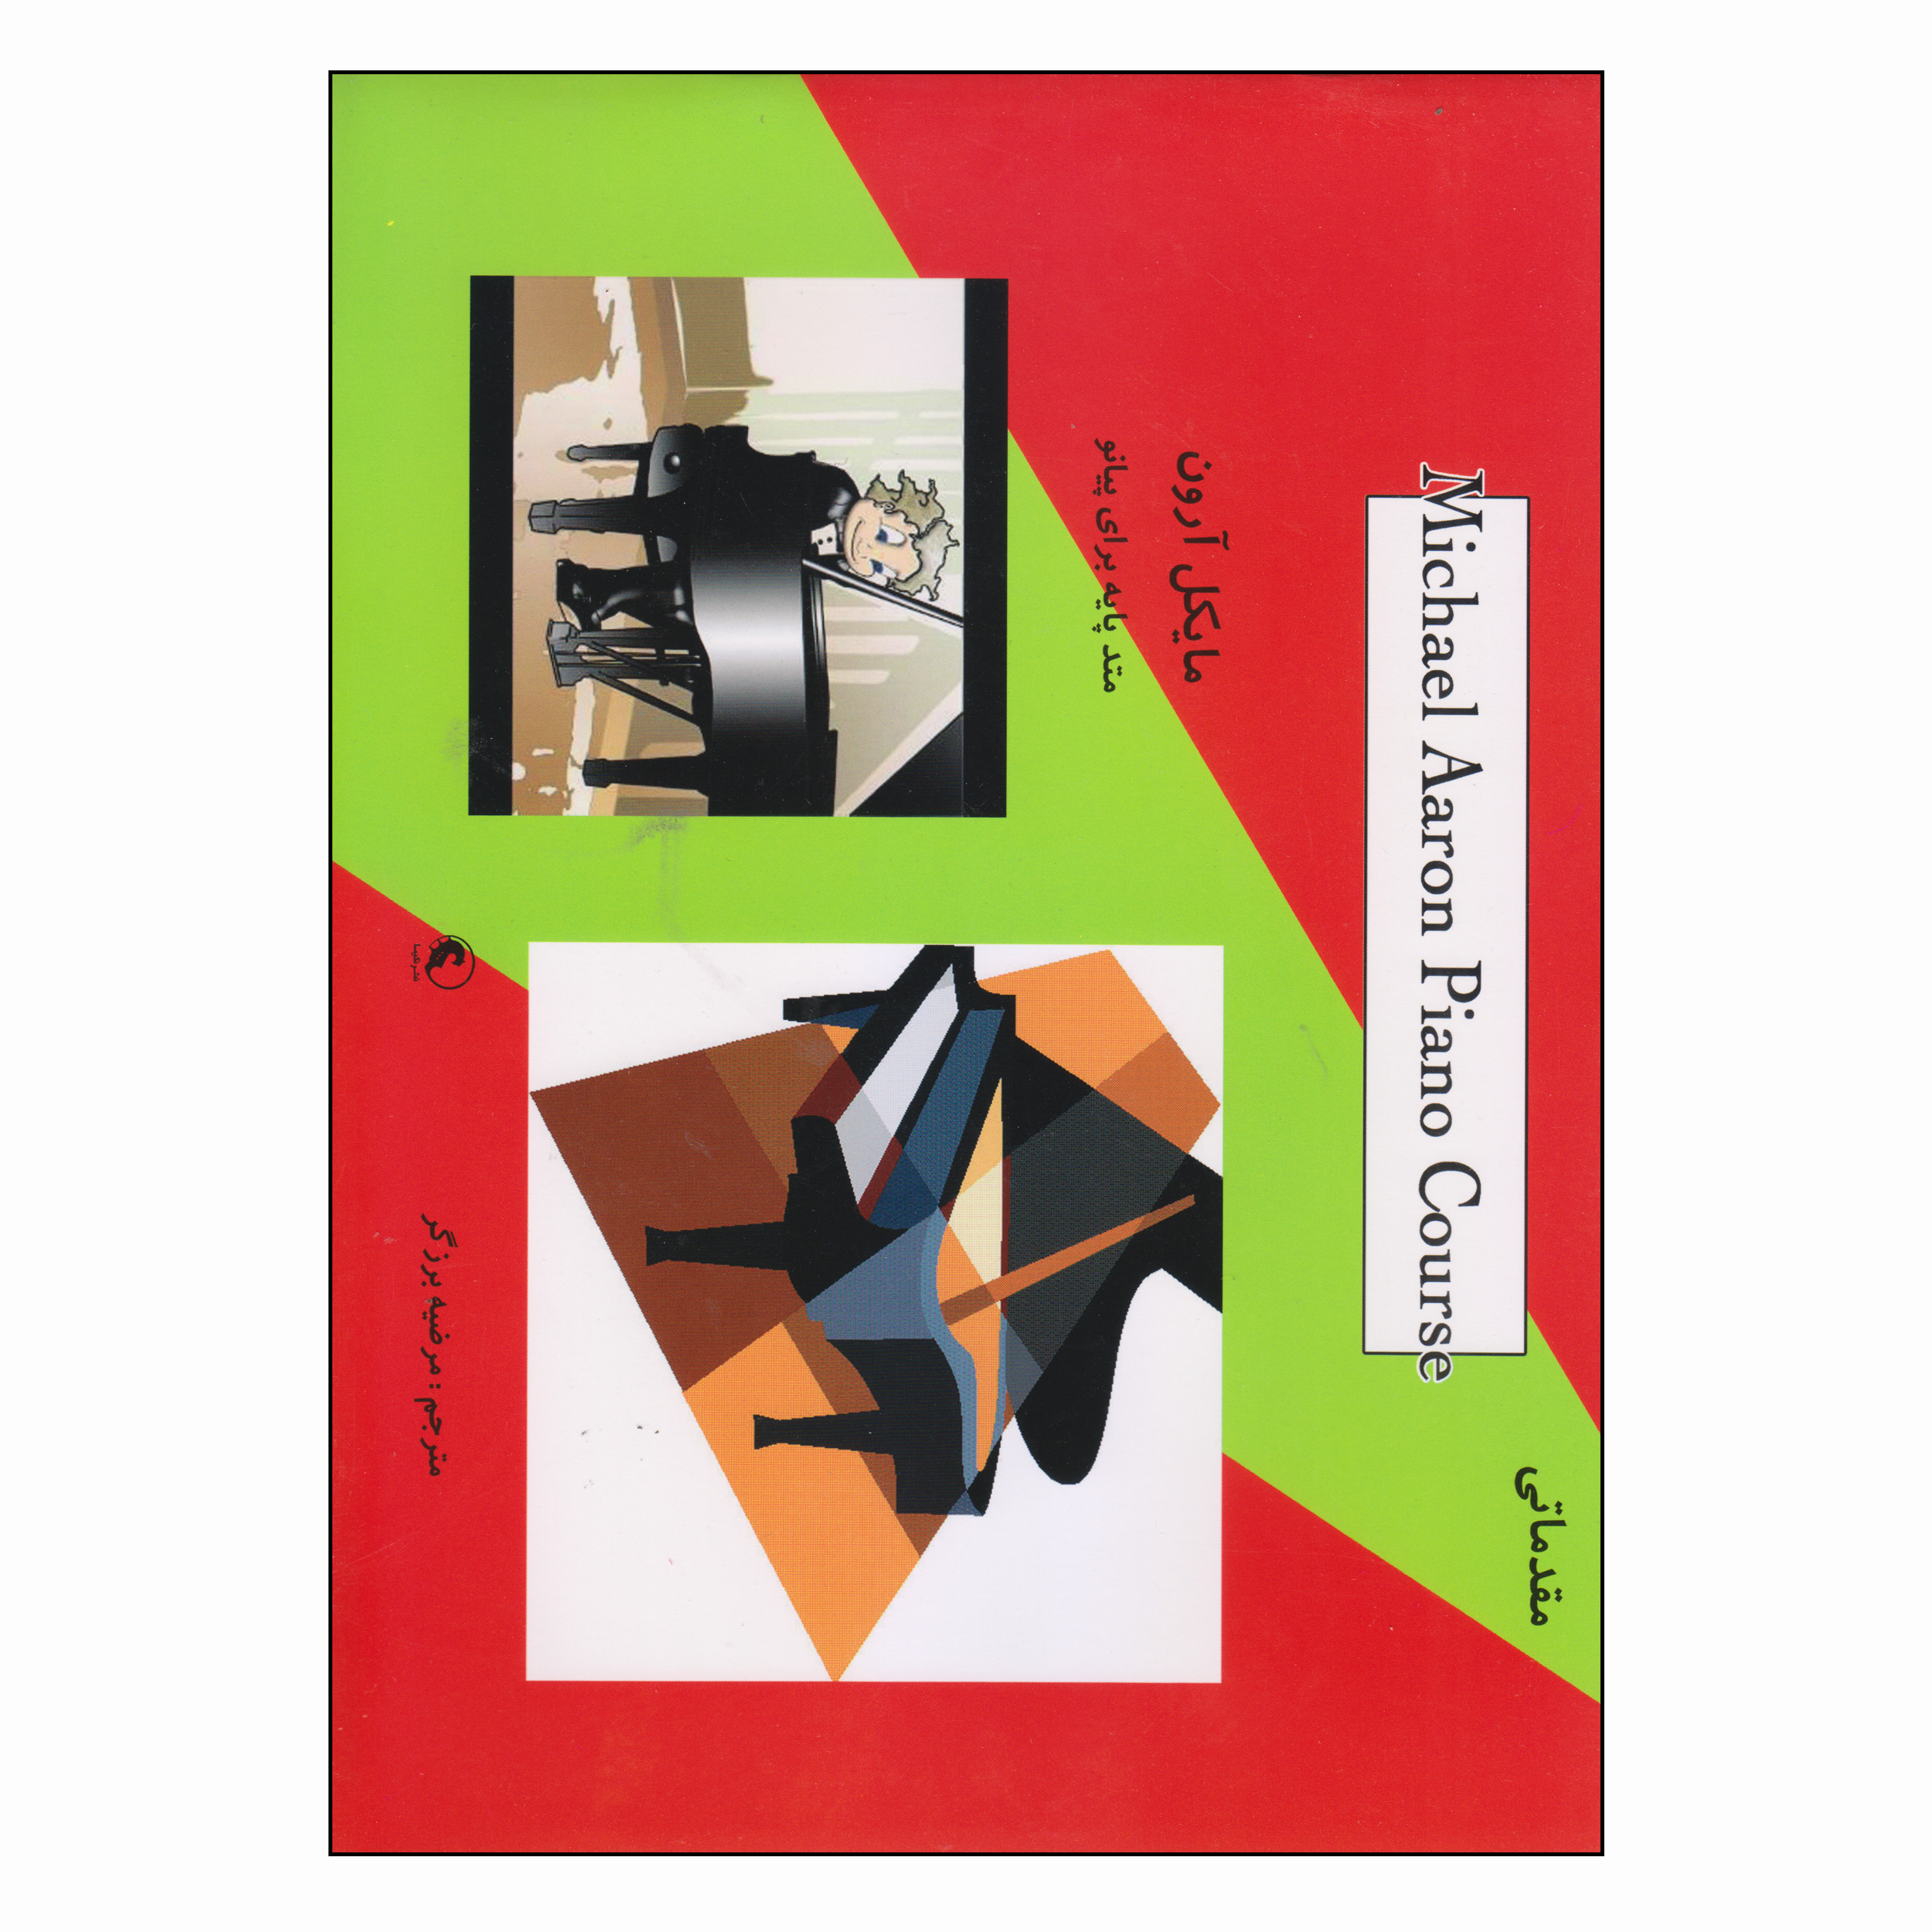 کتاب متد پایه برای پیانو اثر مایکل آرون انتشارات نکیسا